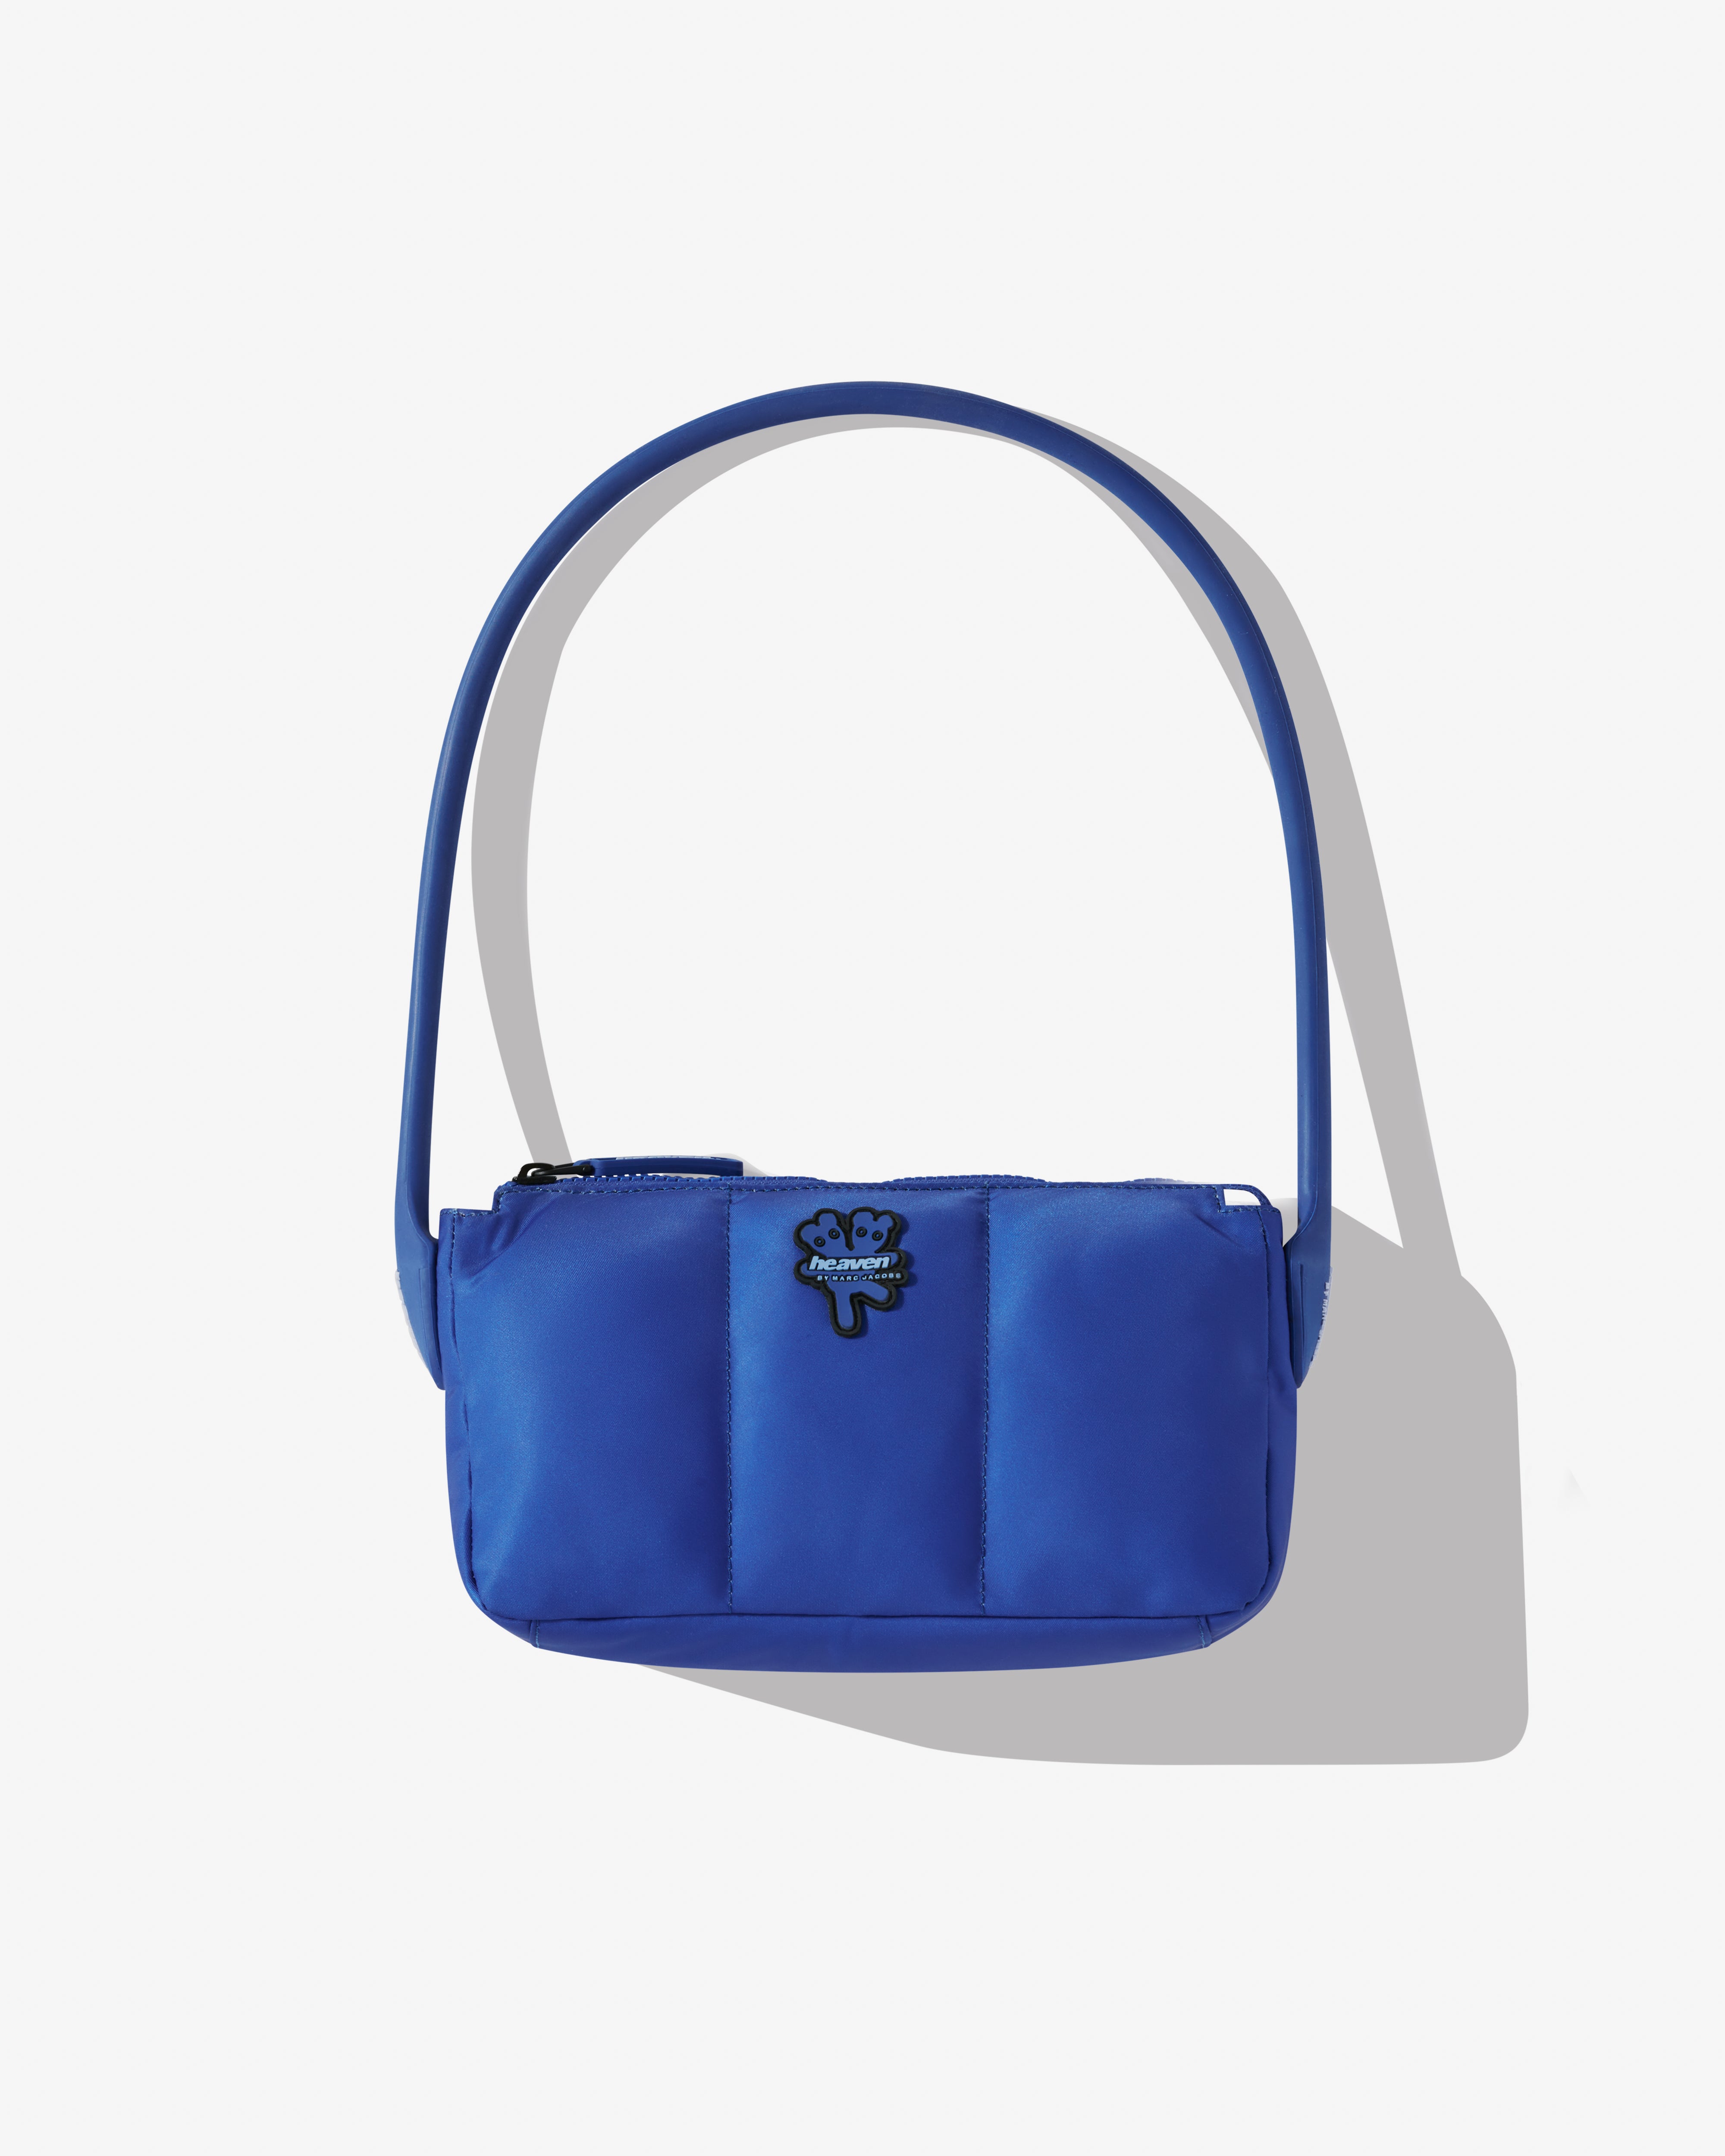 Heaven By Marc Jacobs - Women's Shoulder Bag - (Vivid Blue)